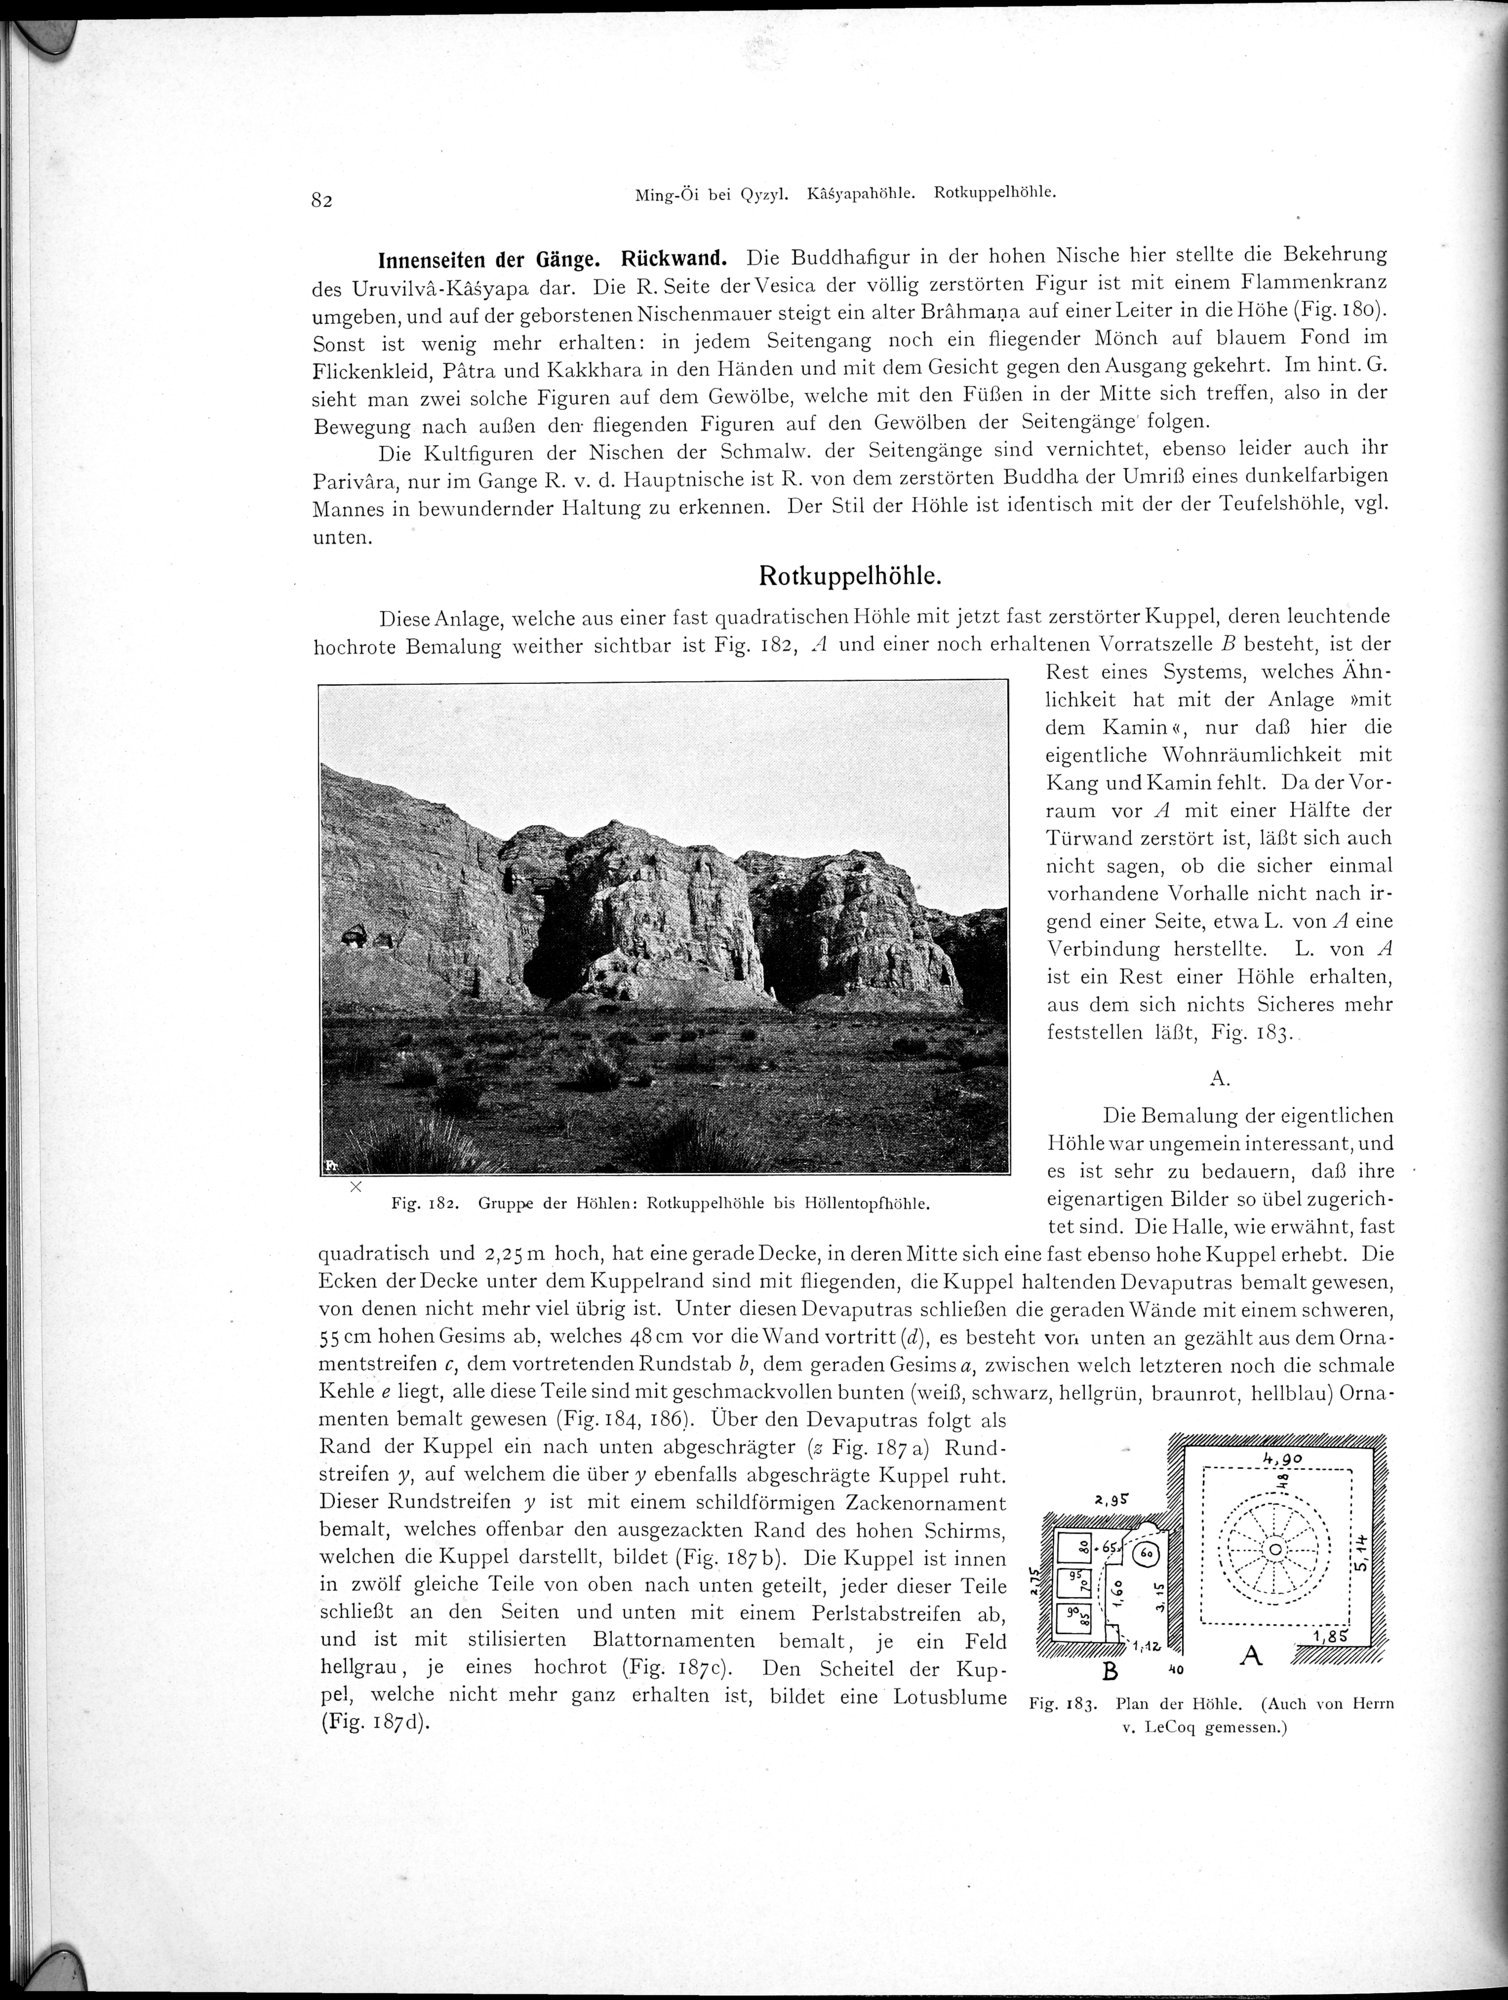 Altbuddhistische Kultstätten in Chinesisch-Turkistan : vol.1 / Page 88 (Grayscale High Resolution Image)